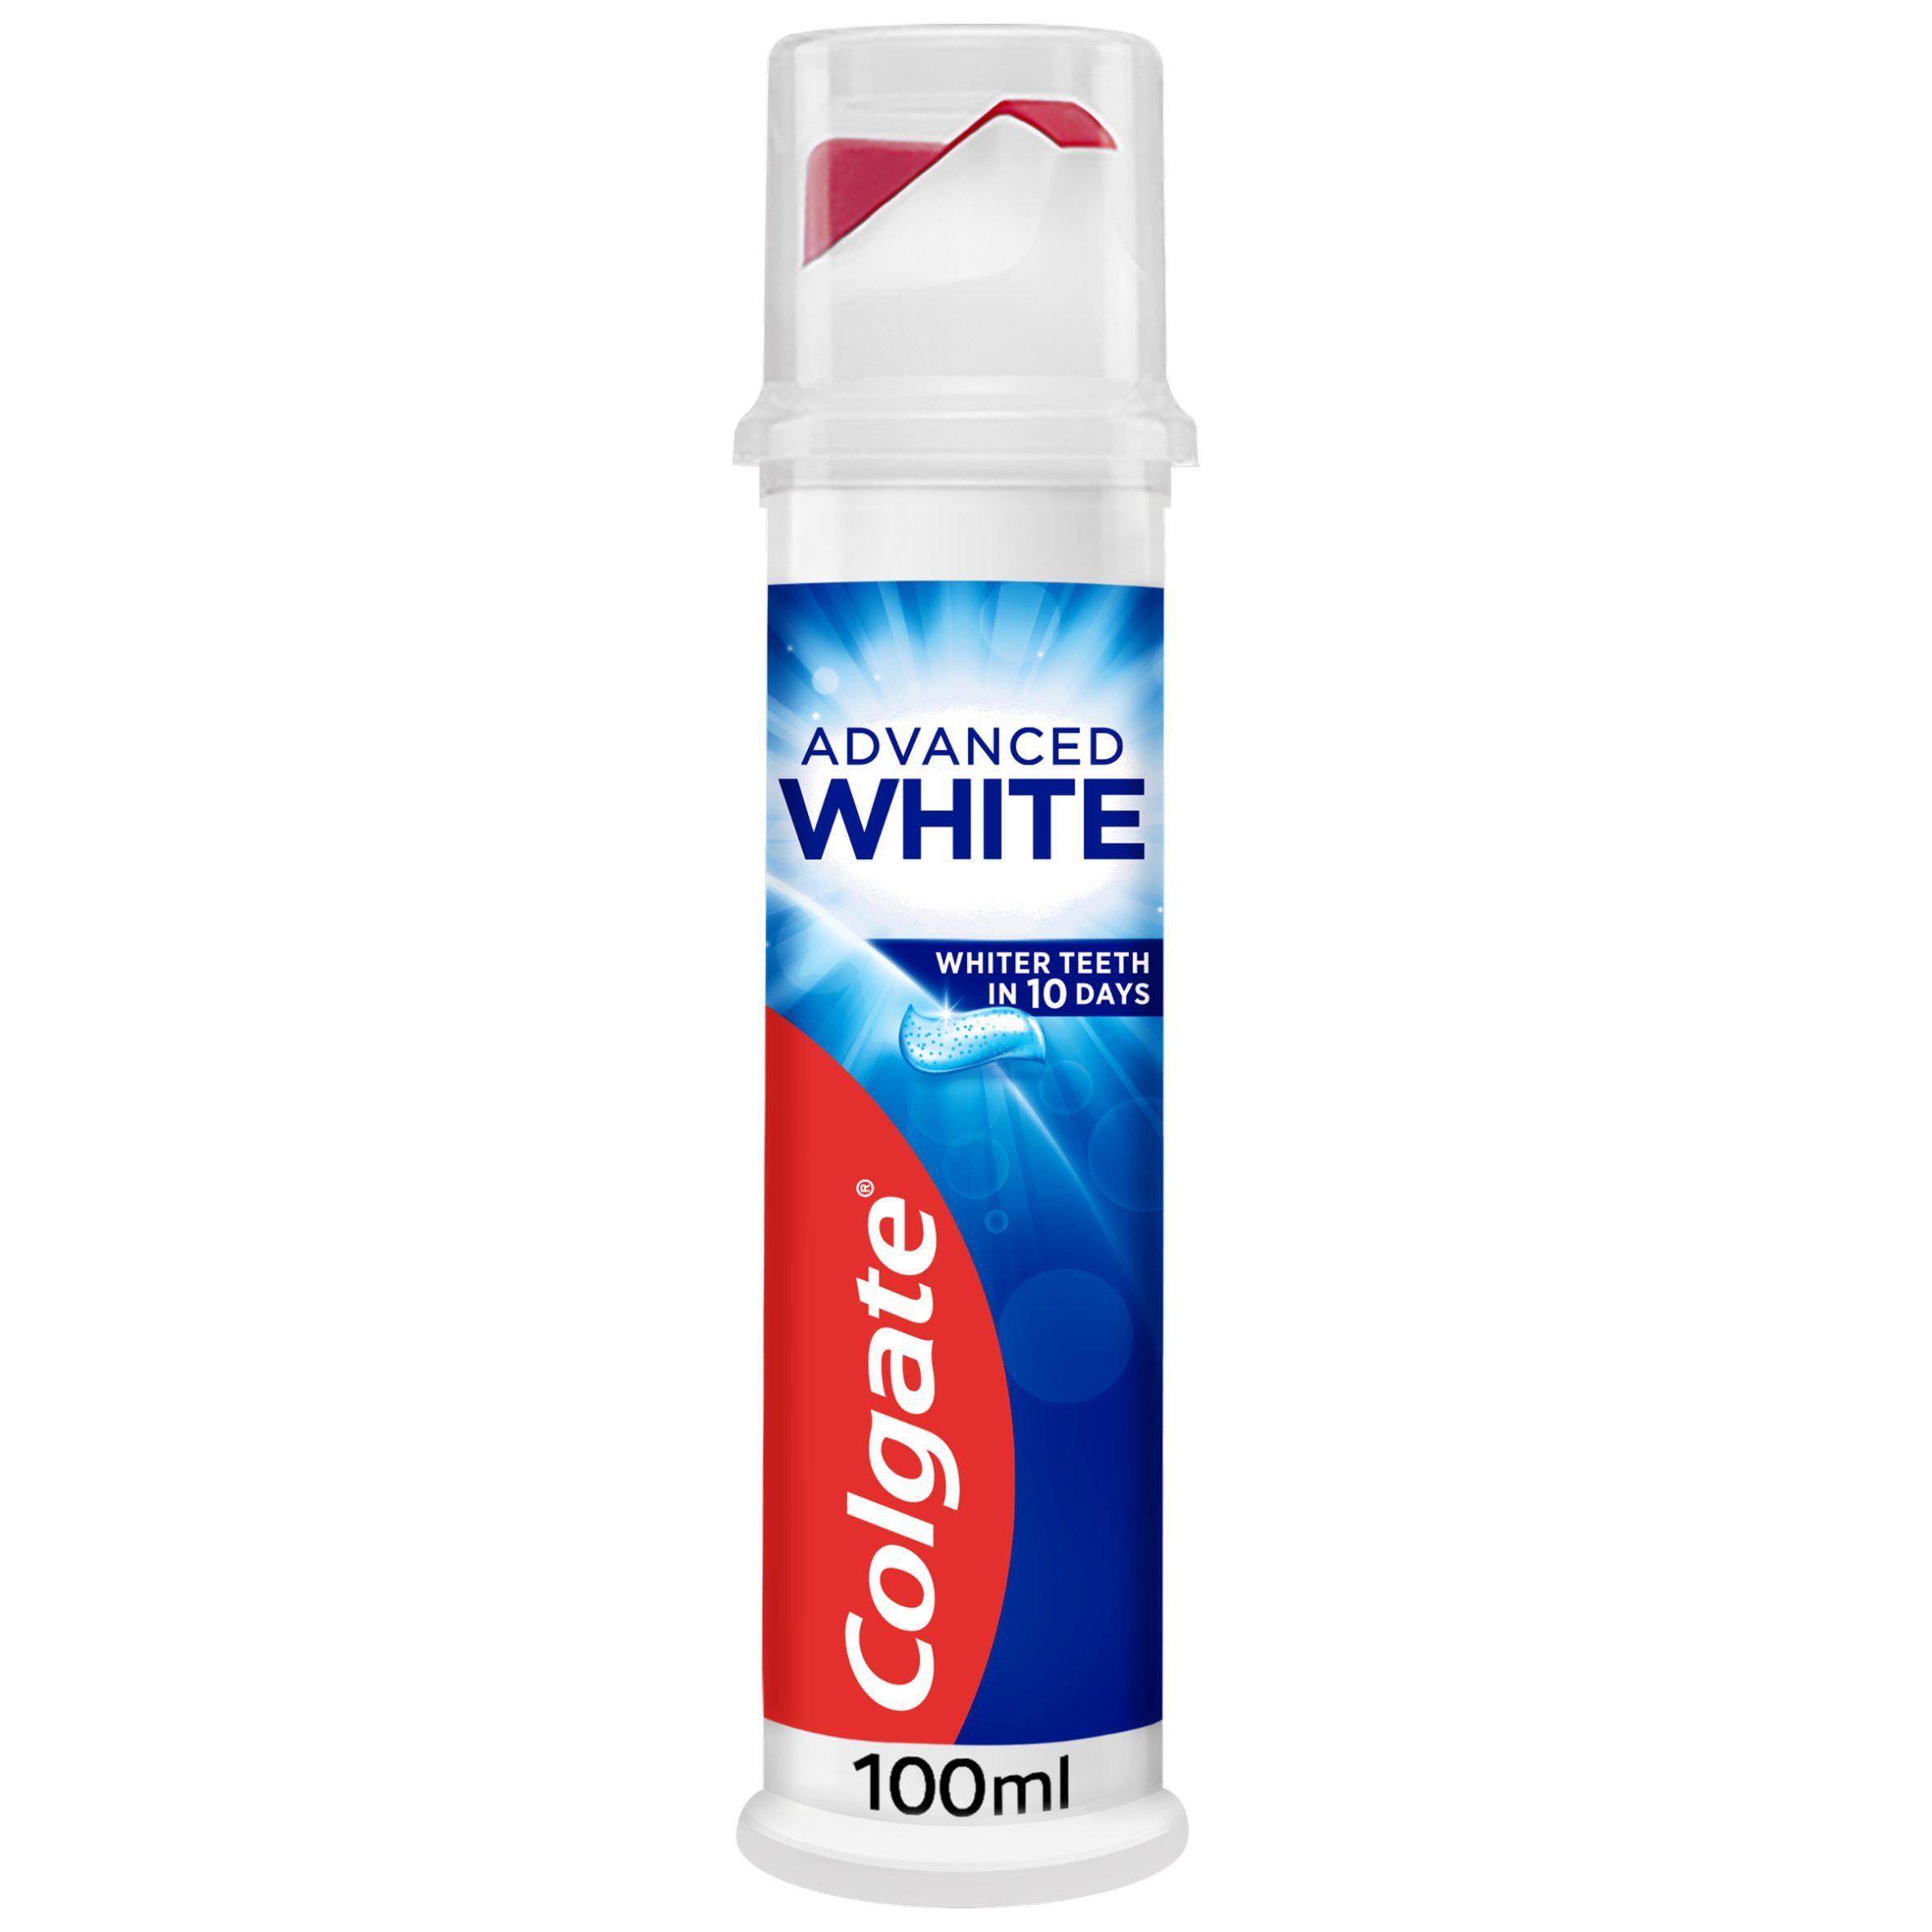 Colgate Advanced White Whitening Toothpaste Pump 100ml toothpaste Sainsburys   